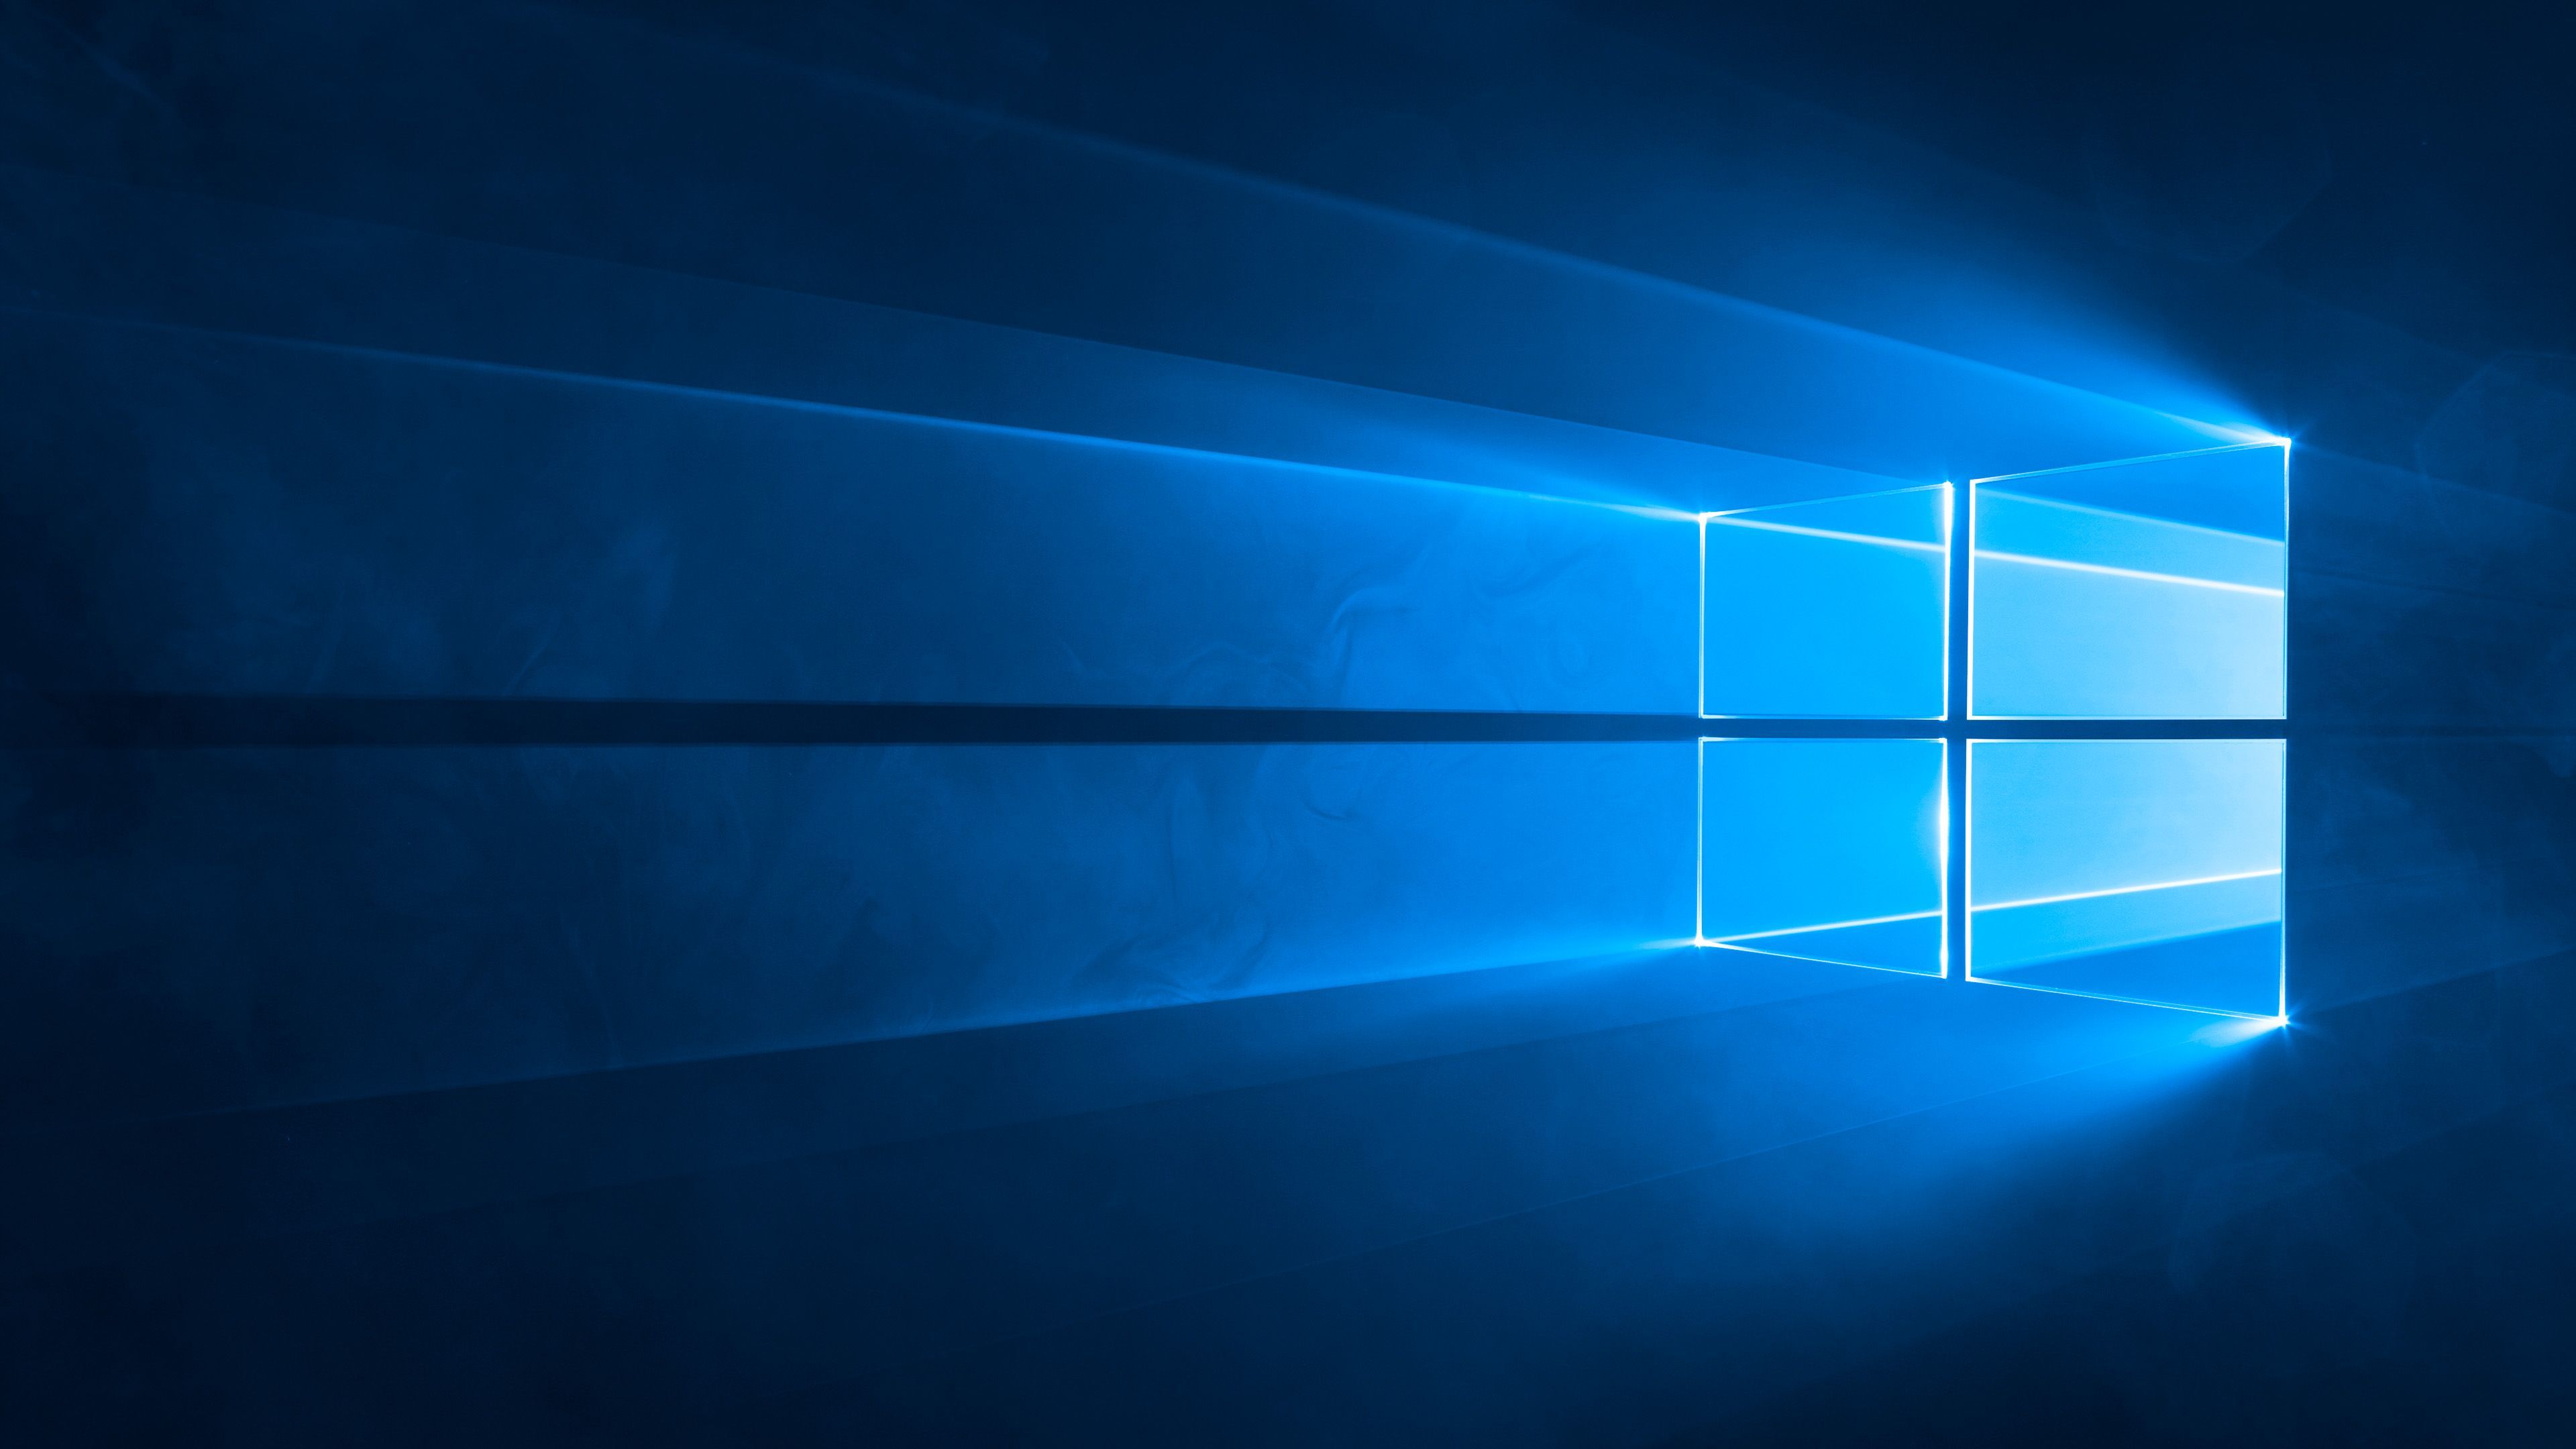 Hình nền Windows 10 của Microsoft được thiết kế với rất nhiều phong cách khác nhau, từ những hình ảnh tĩnh đơn giản đến những hình ảnh động đa dạng. Hãy trang trí cho màn hình của bạn với những bức ảnh đẹp mắt này và tận hưởng trải nghiệm tuyệt vời trên Microsoft Windows